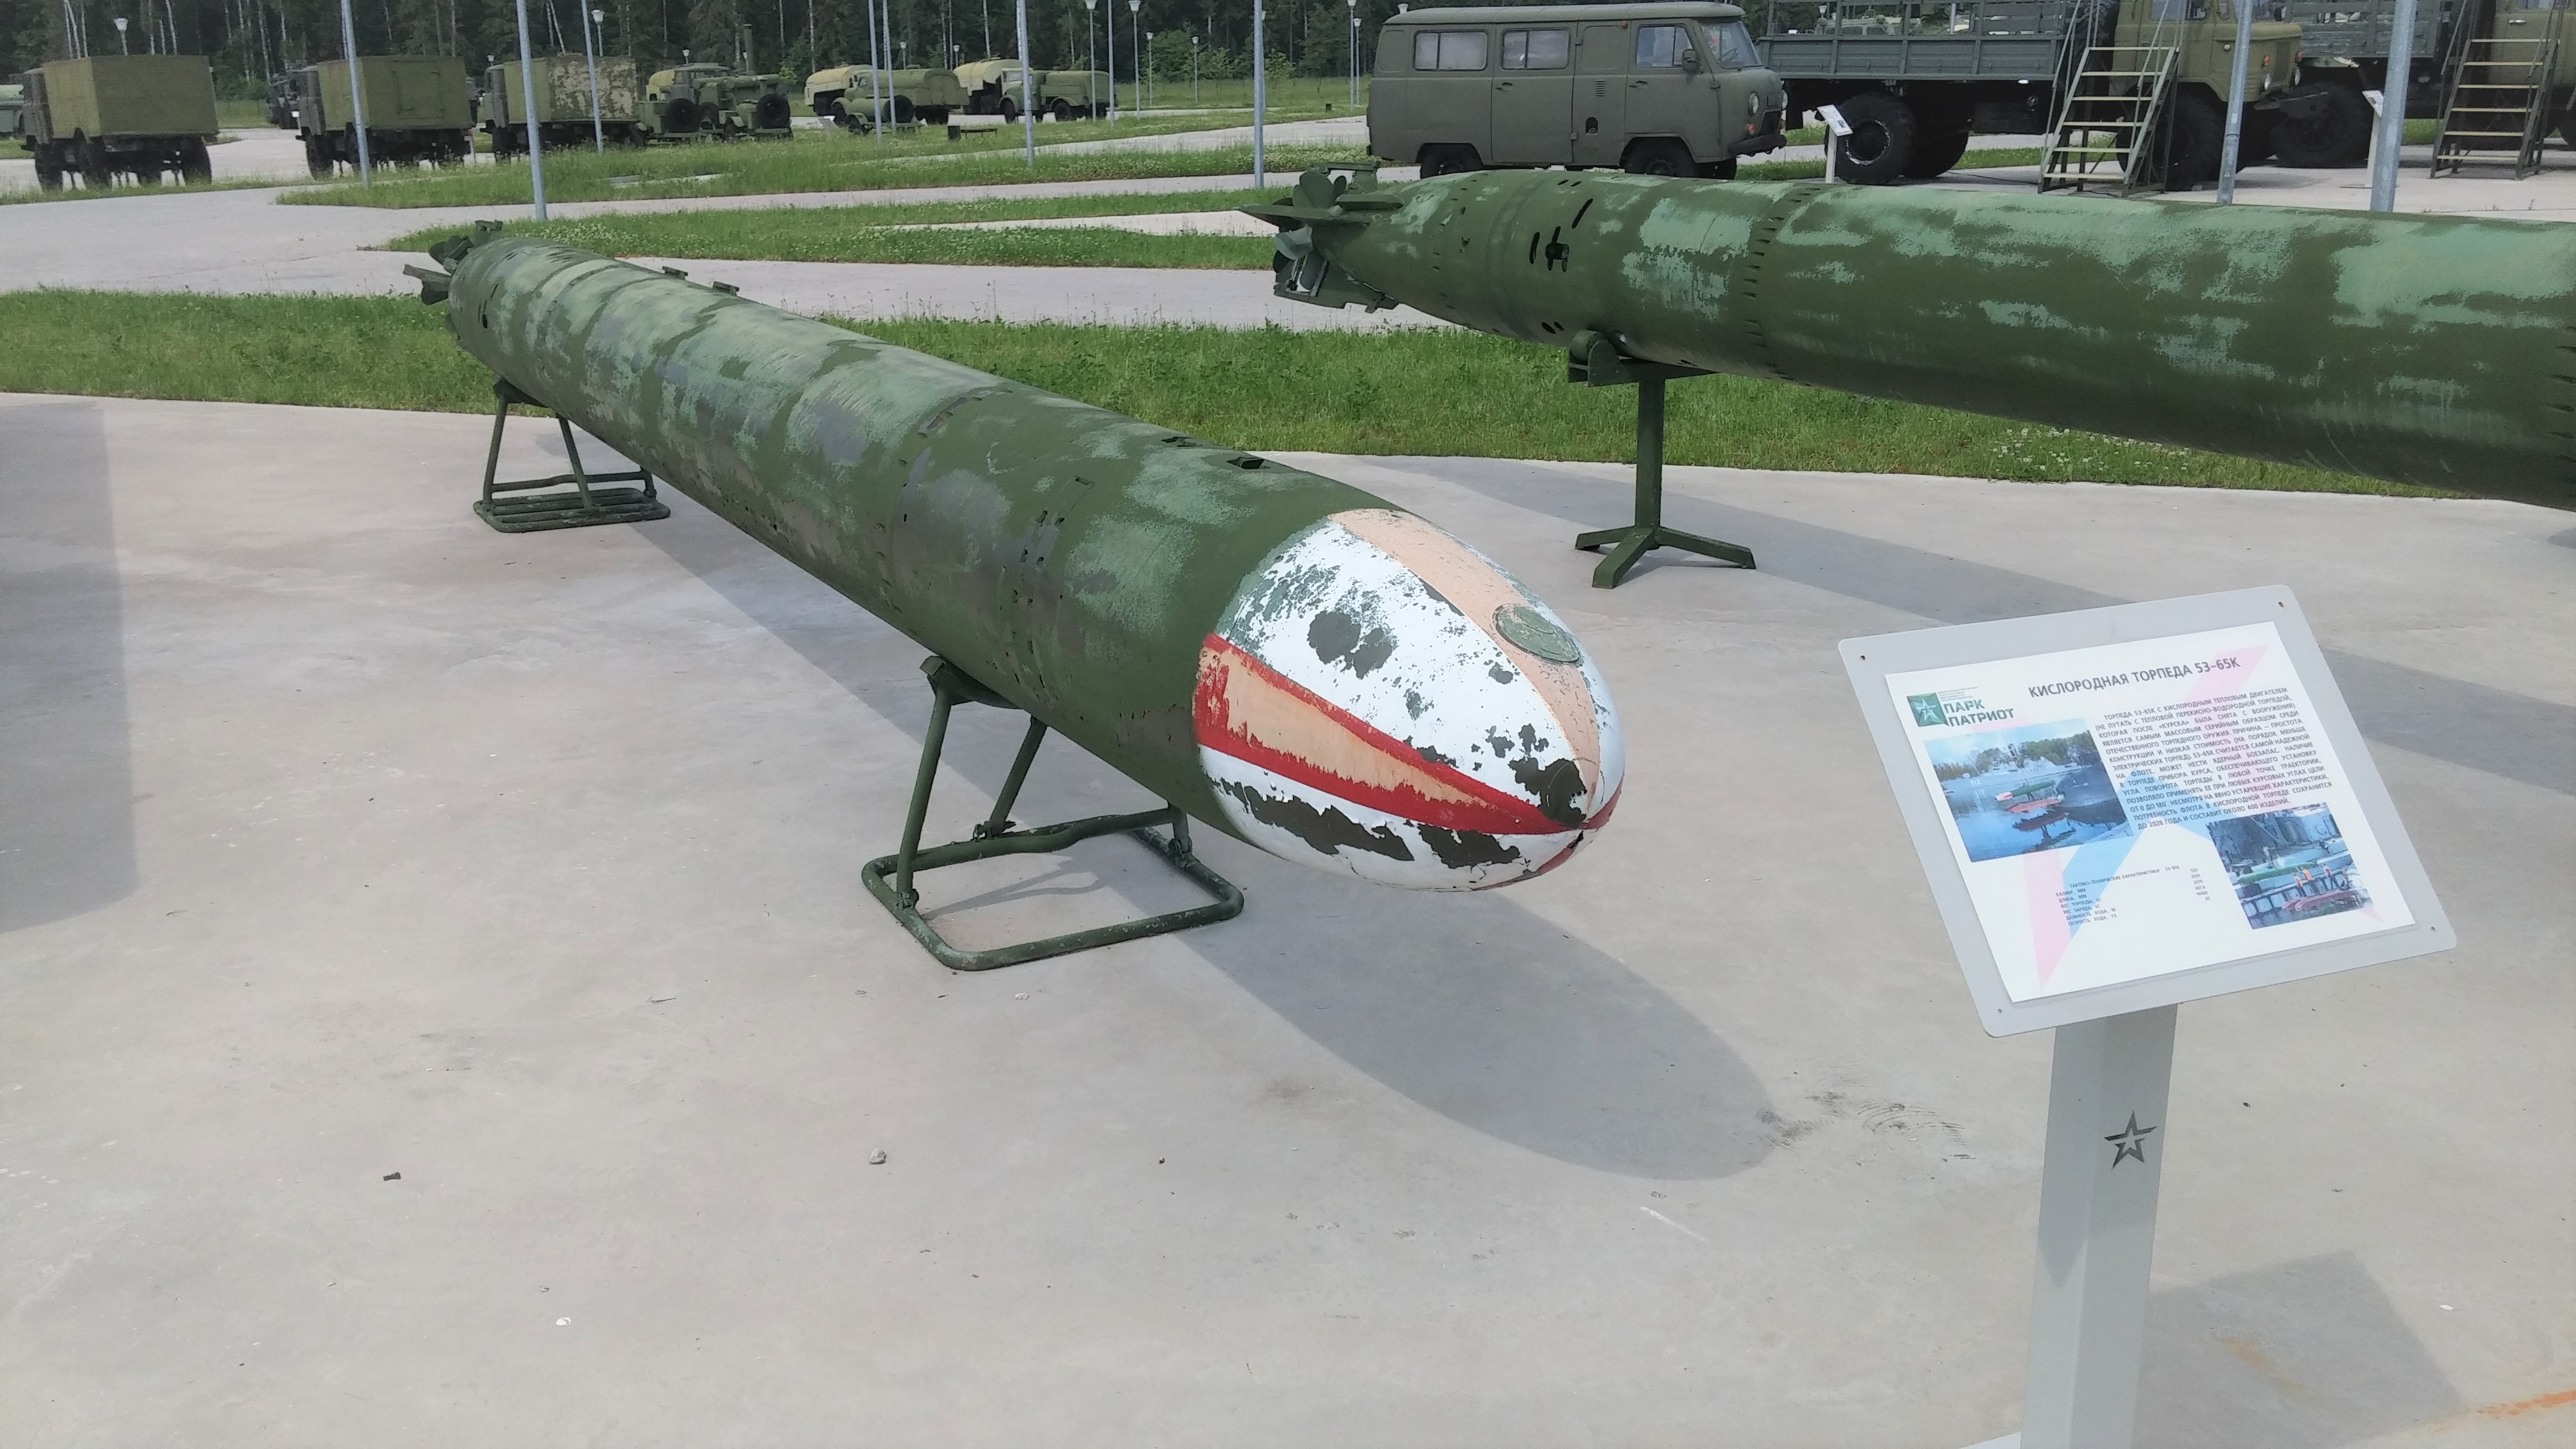 Торпеда парогазовая 53-56в;советская противокорабельная торпеда парогазовая 53-56в – подводное оружие нового поколения